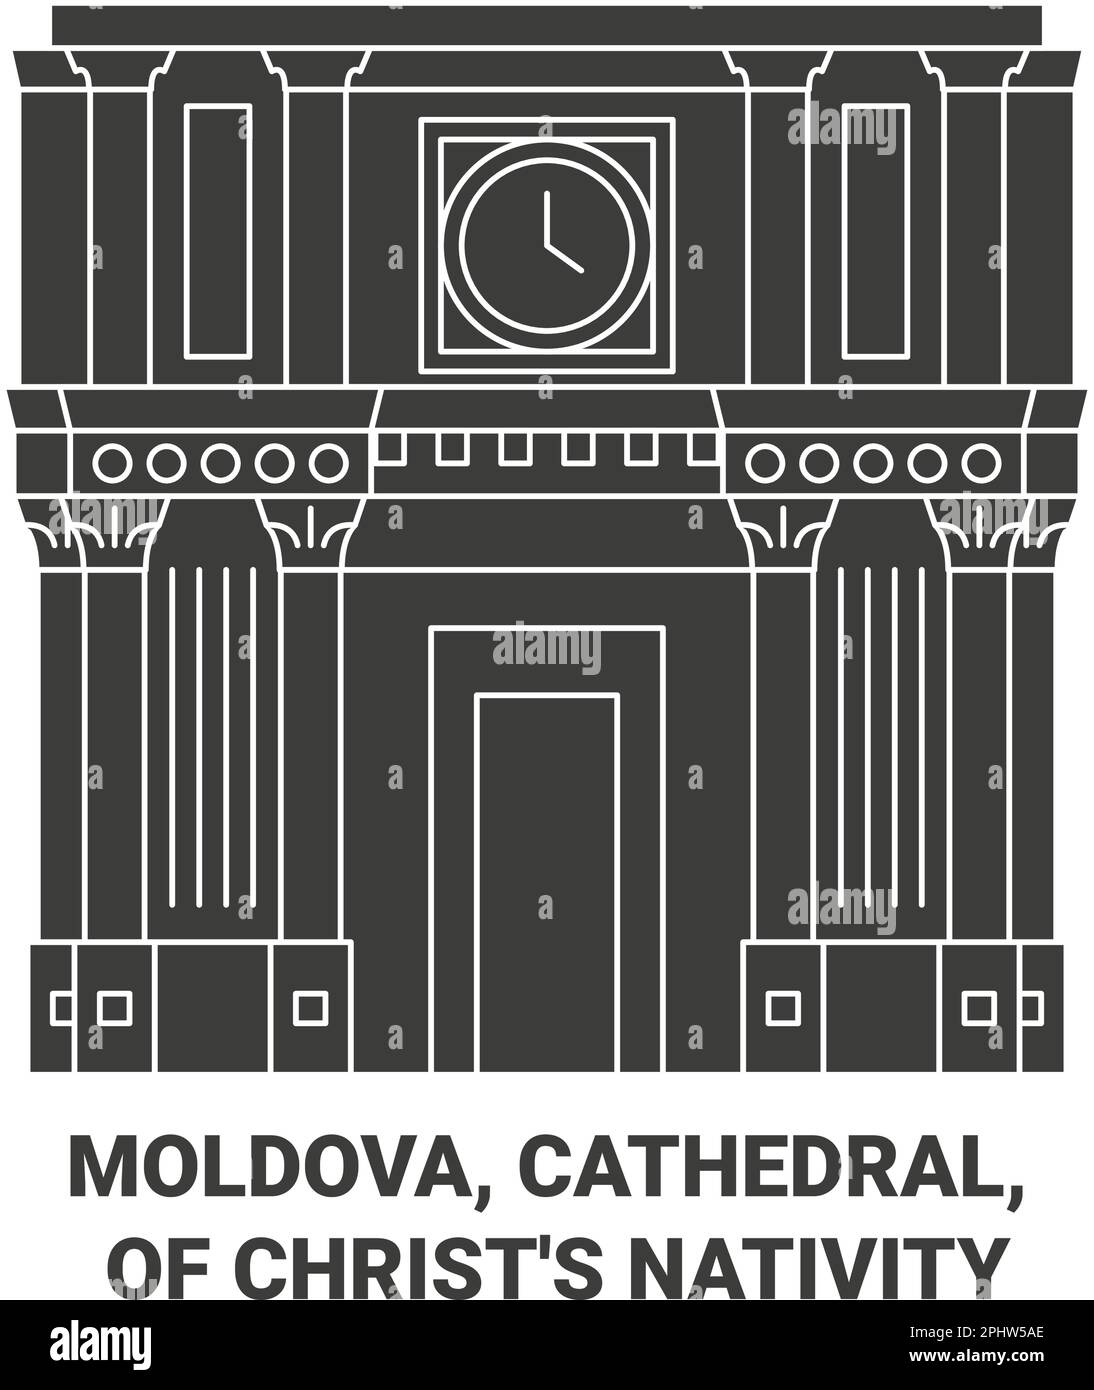 Moldavie, Cathédrale, de la Nativité du Christ Voyage illustration vecteur Illustration de Vecteur